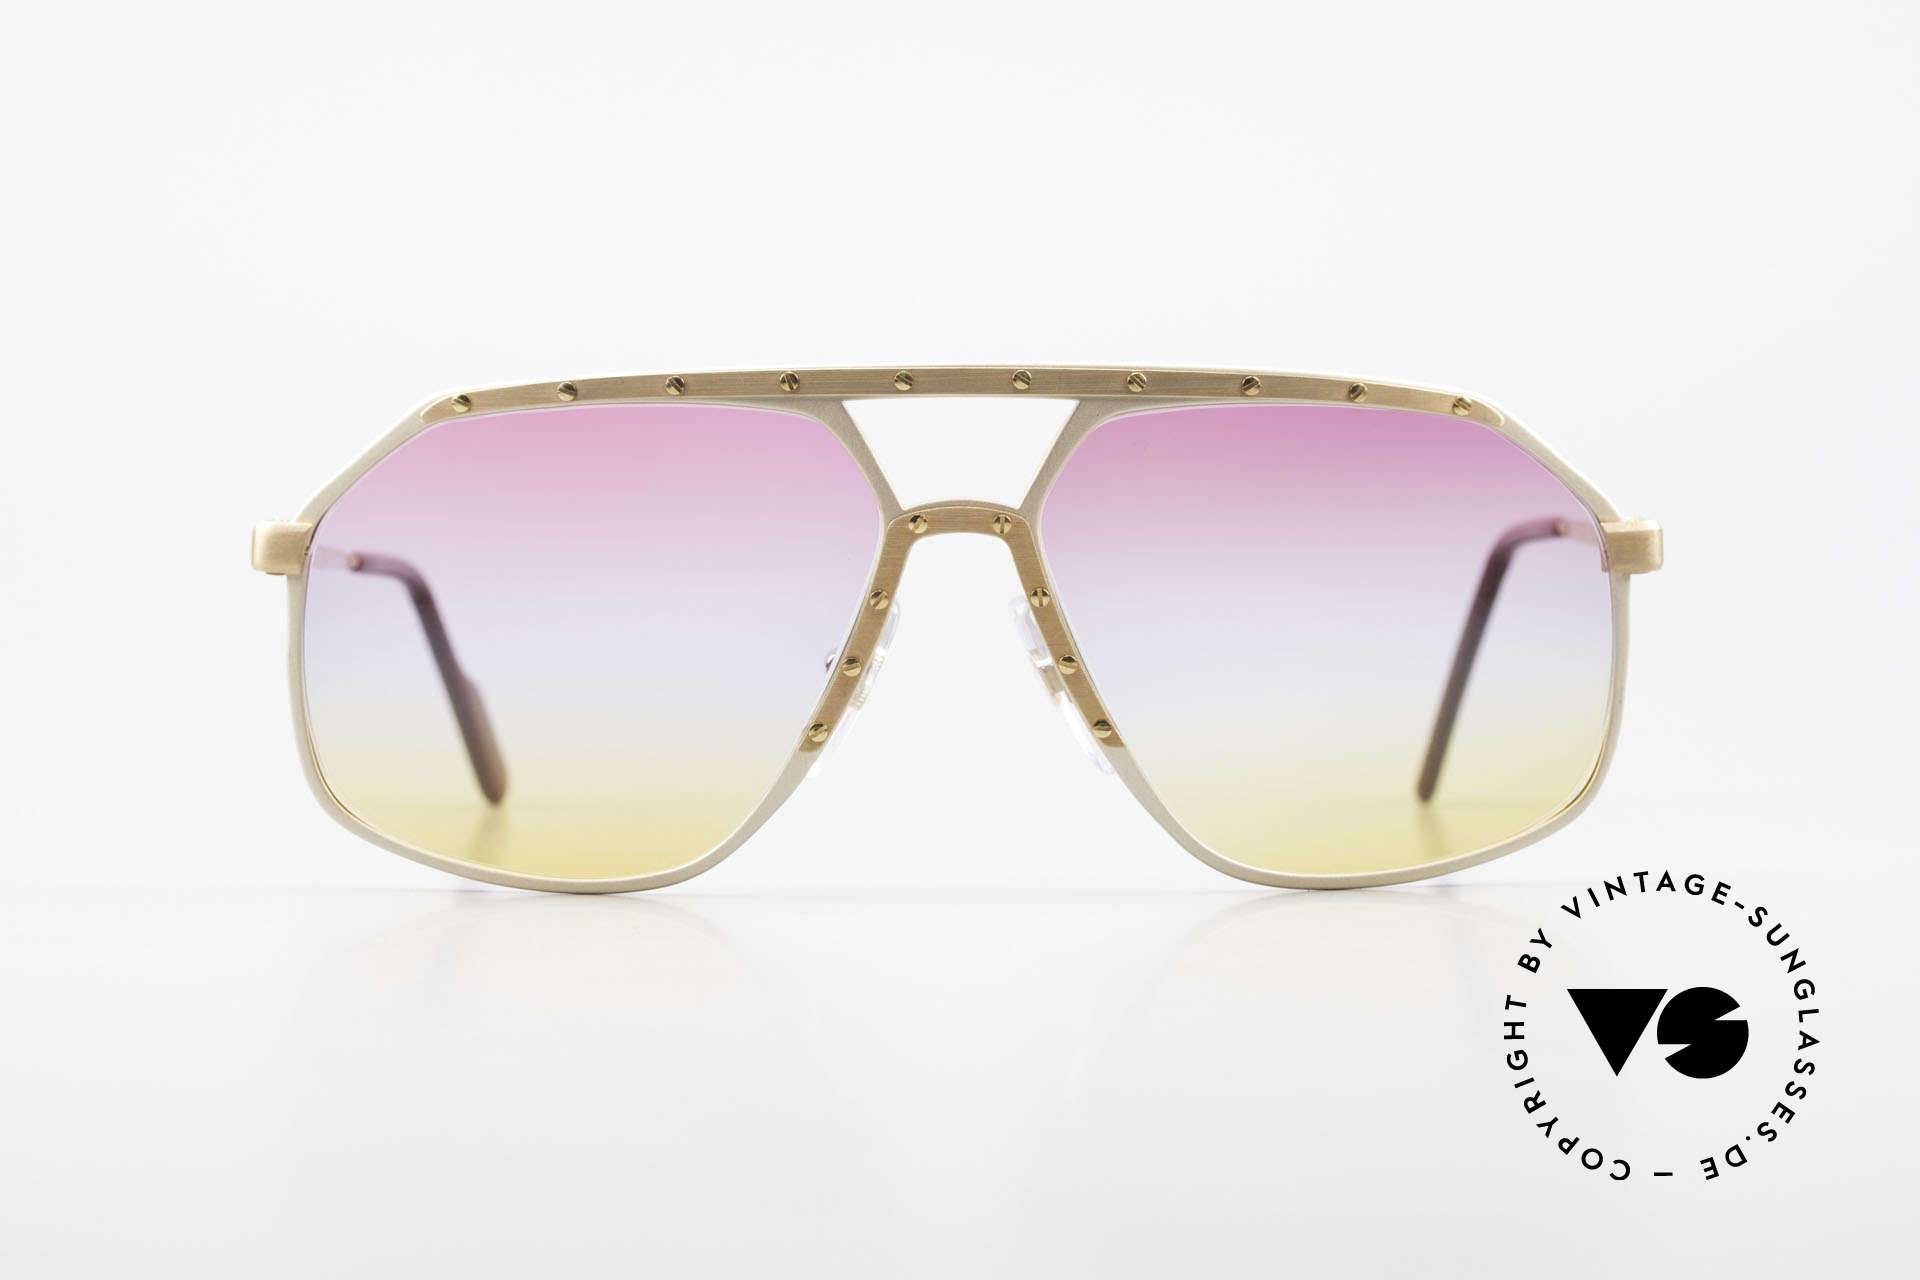 Alpina M6 80er Brillenklassiker Sunset, ein kostbares 80er ORIGINAL: Sammlersonnenbrille, Passend für Herren und Damen